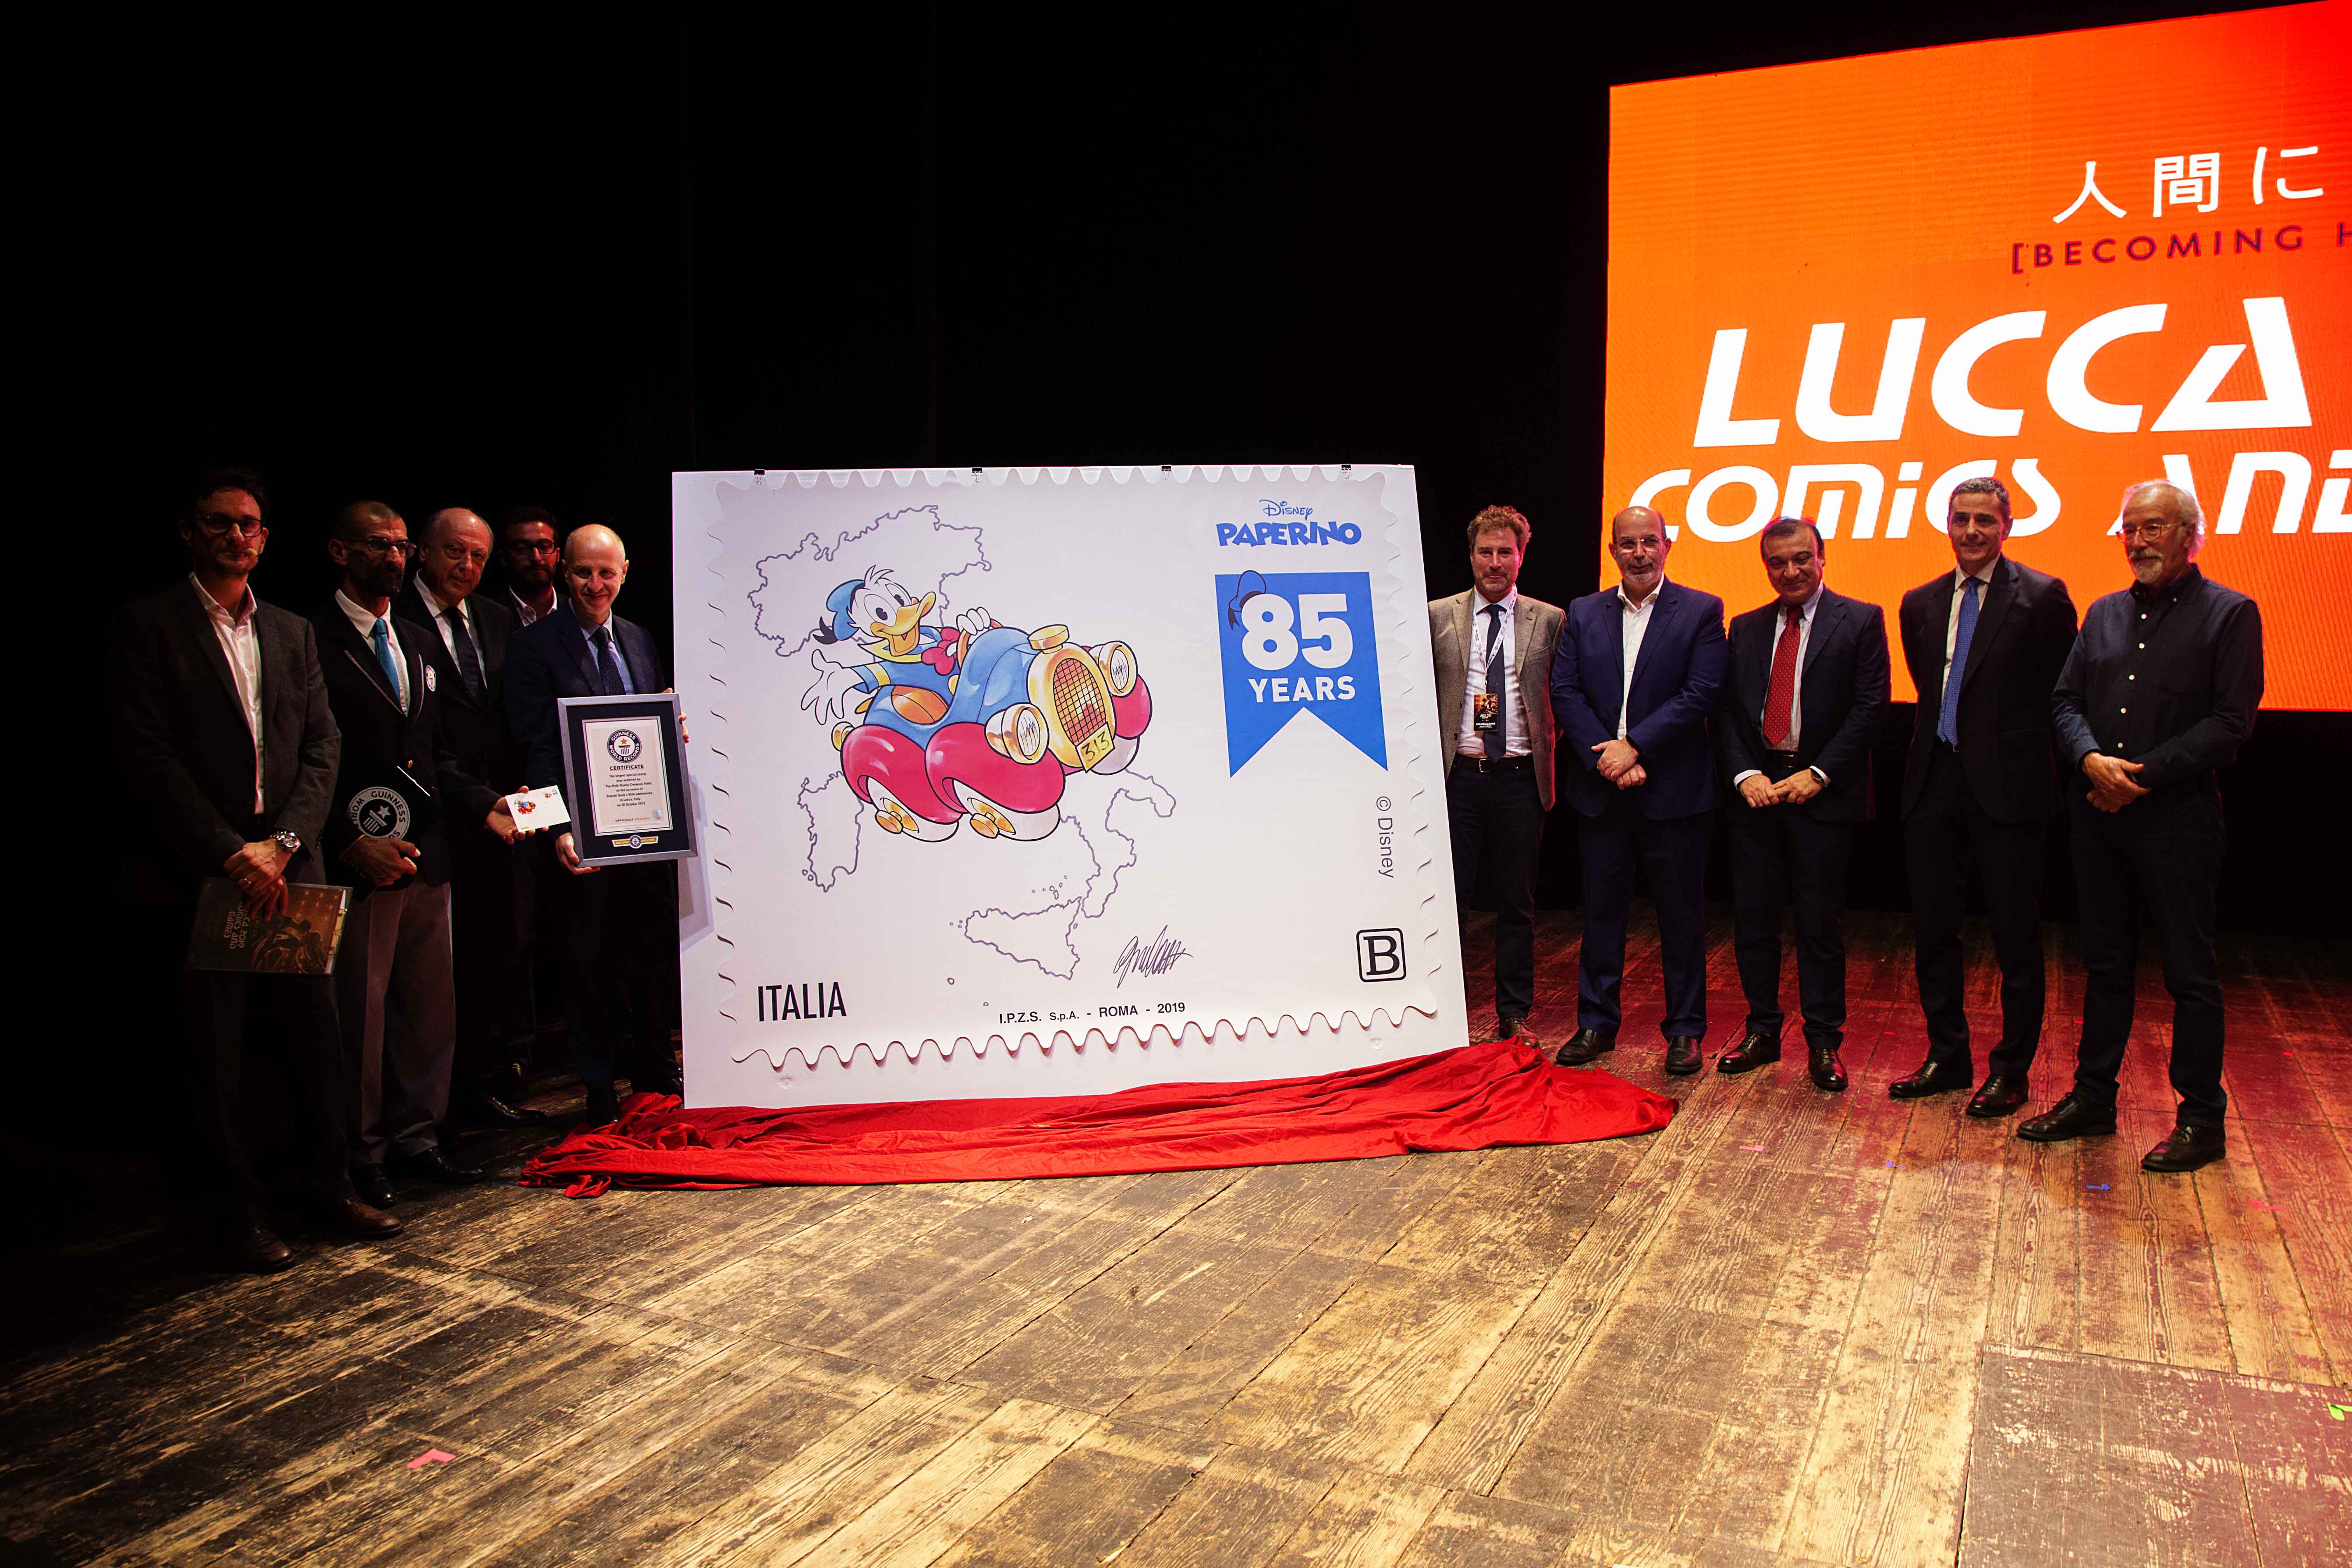 Lucca 2019 - Un francobollo da record per gli 85 anni di Paperino